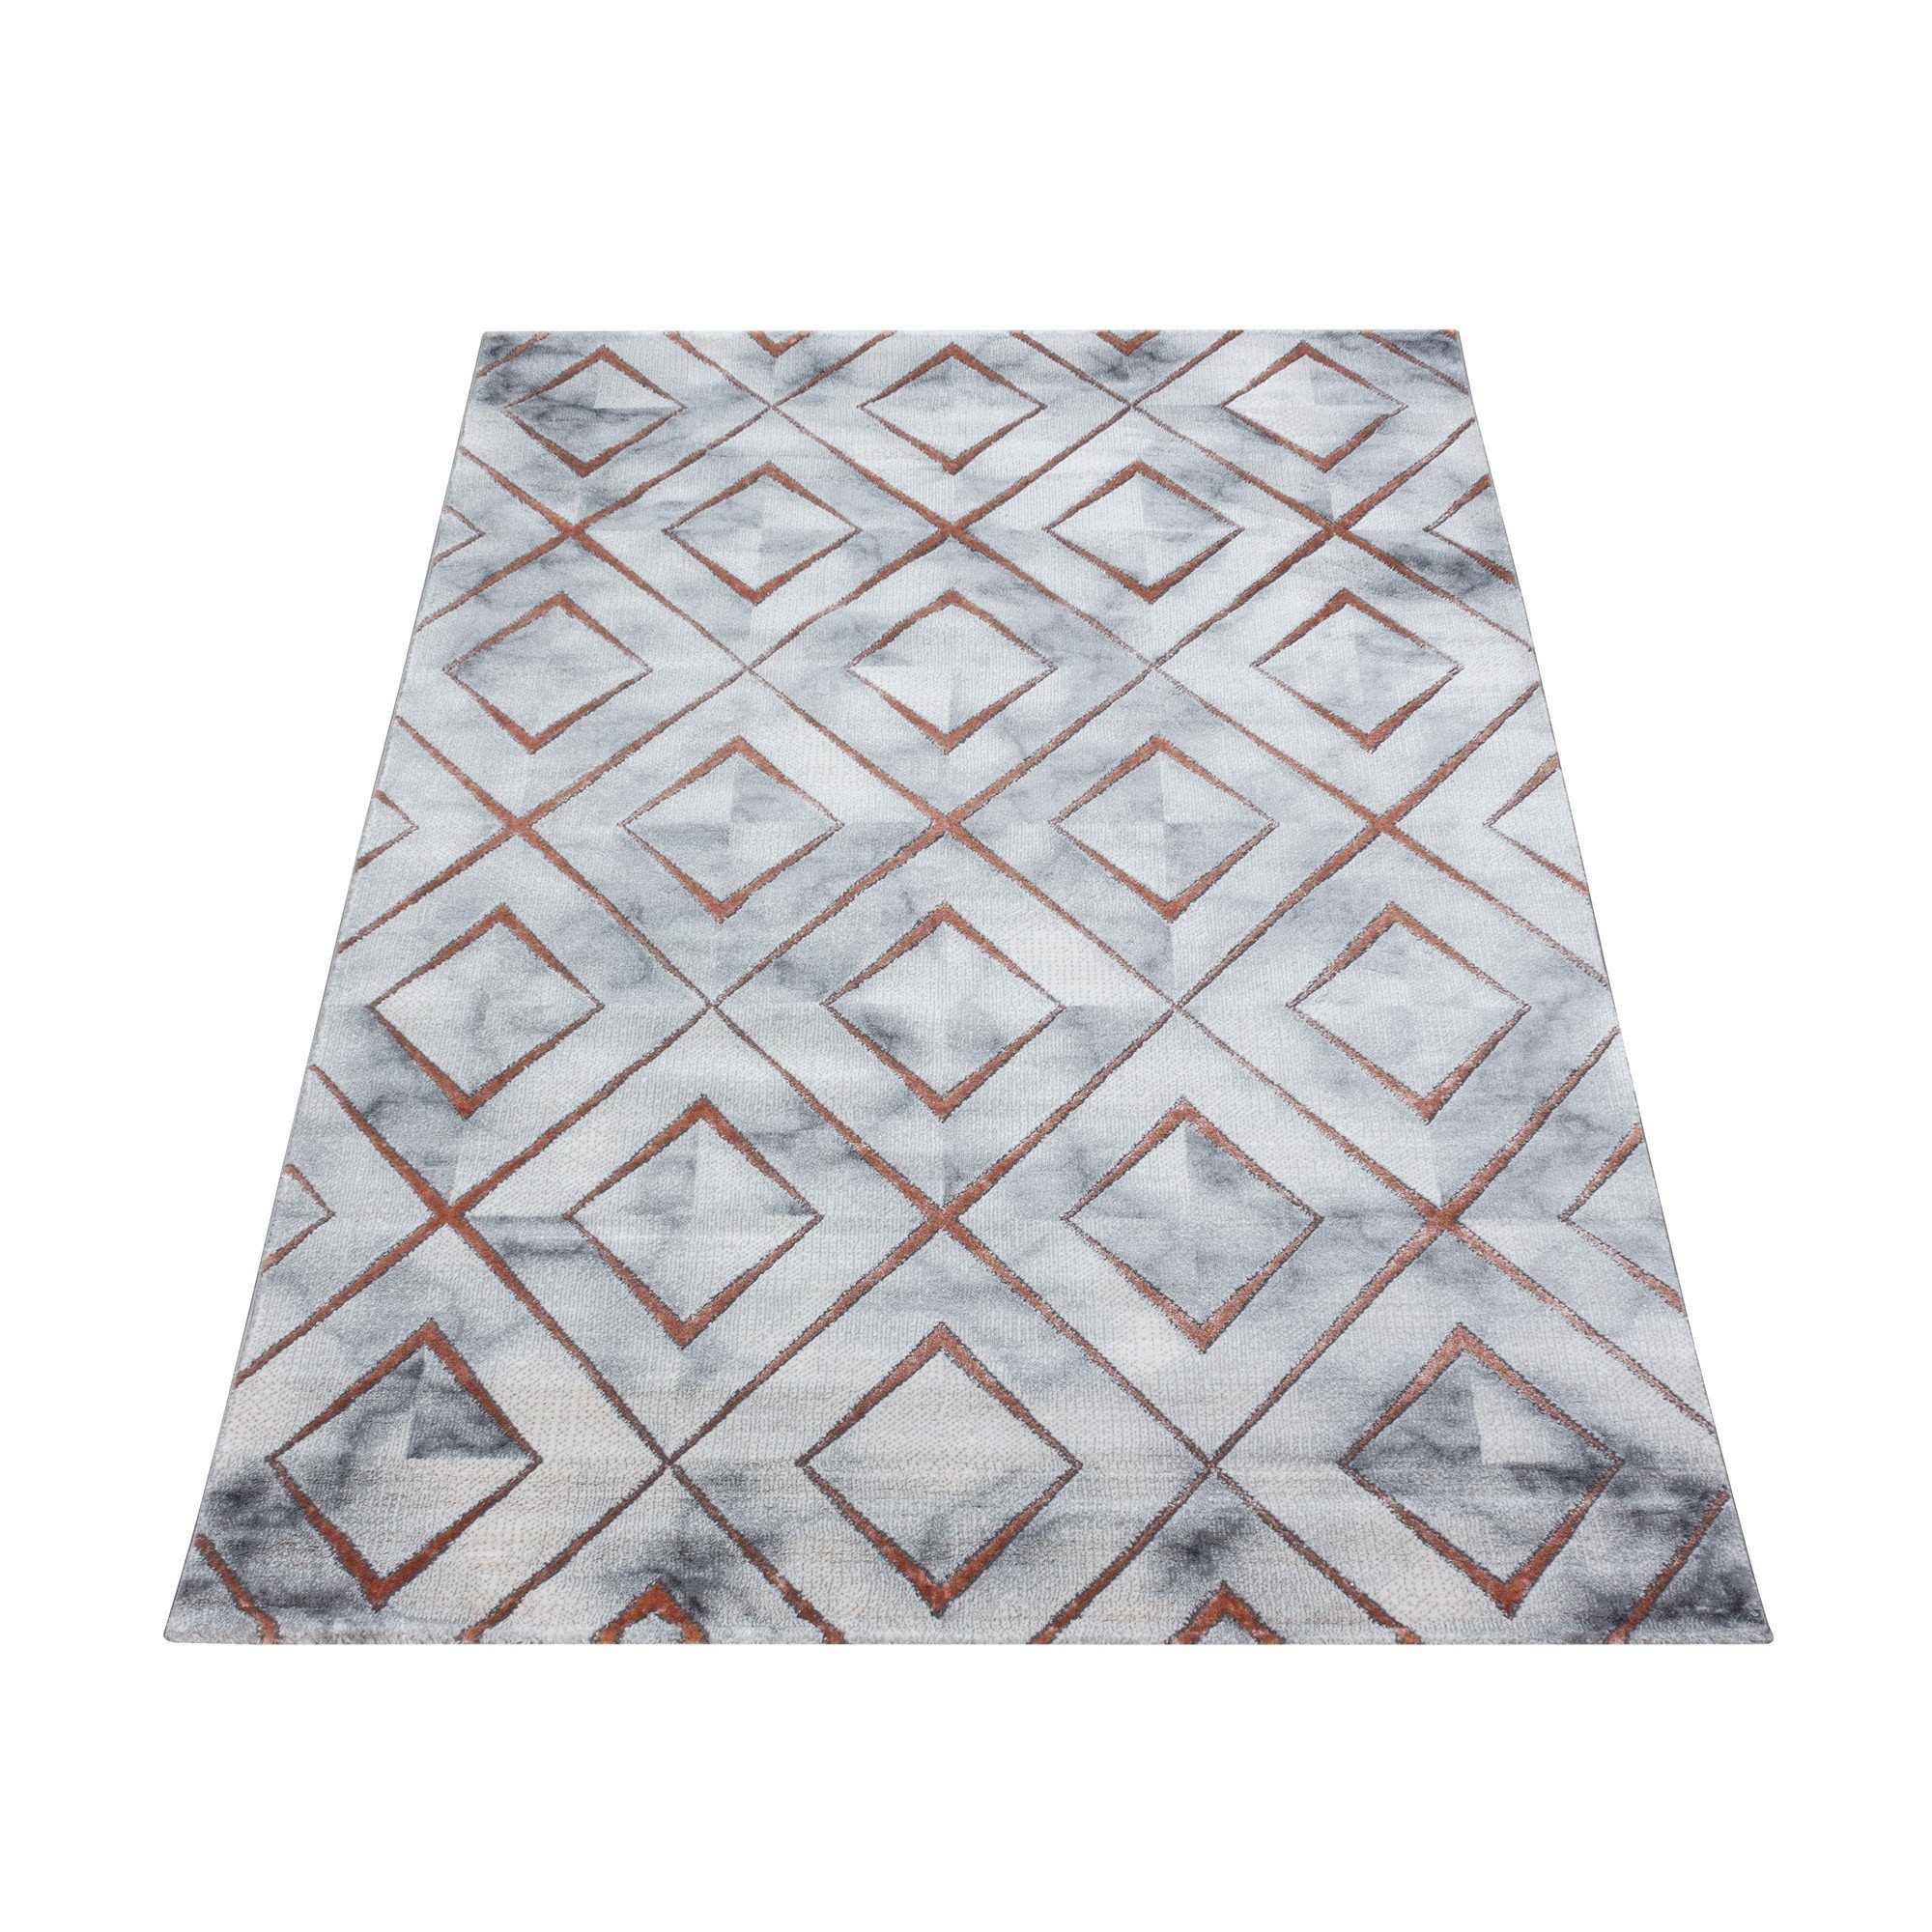 Designteppich Marmoroptik Flachflorteppich Kurzflorteppich Wohnzimmer Muster, Angeycasa Bronze